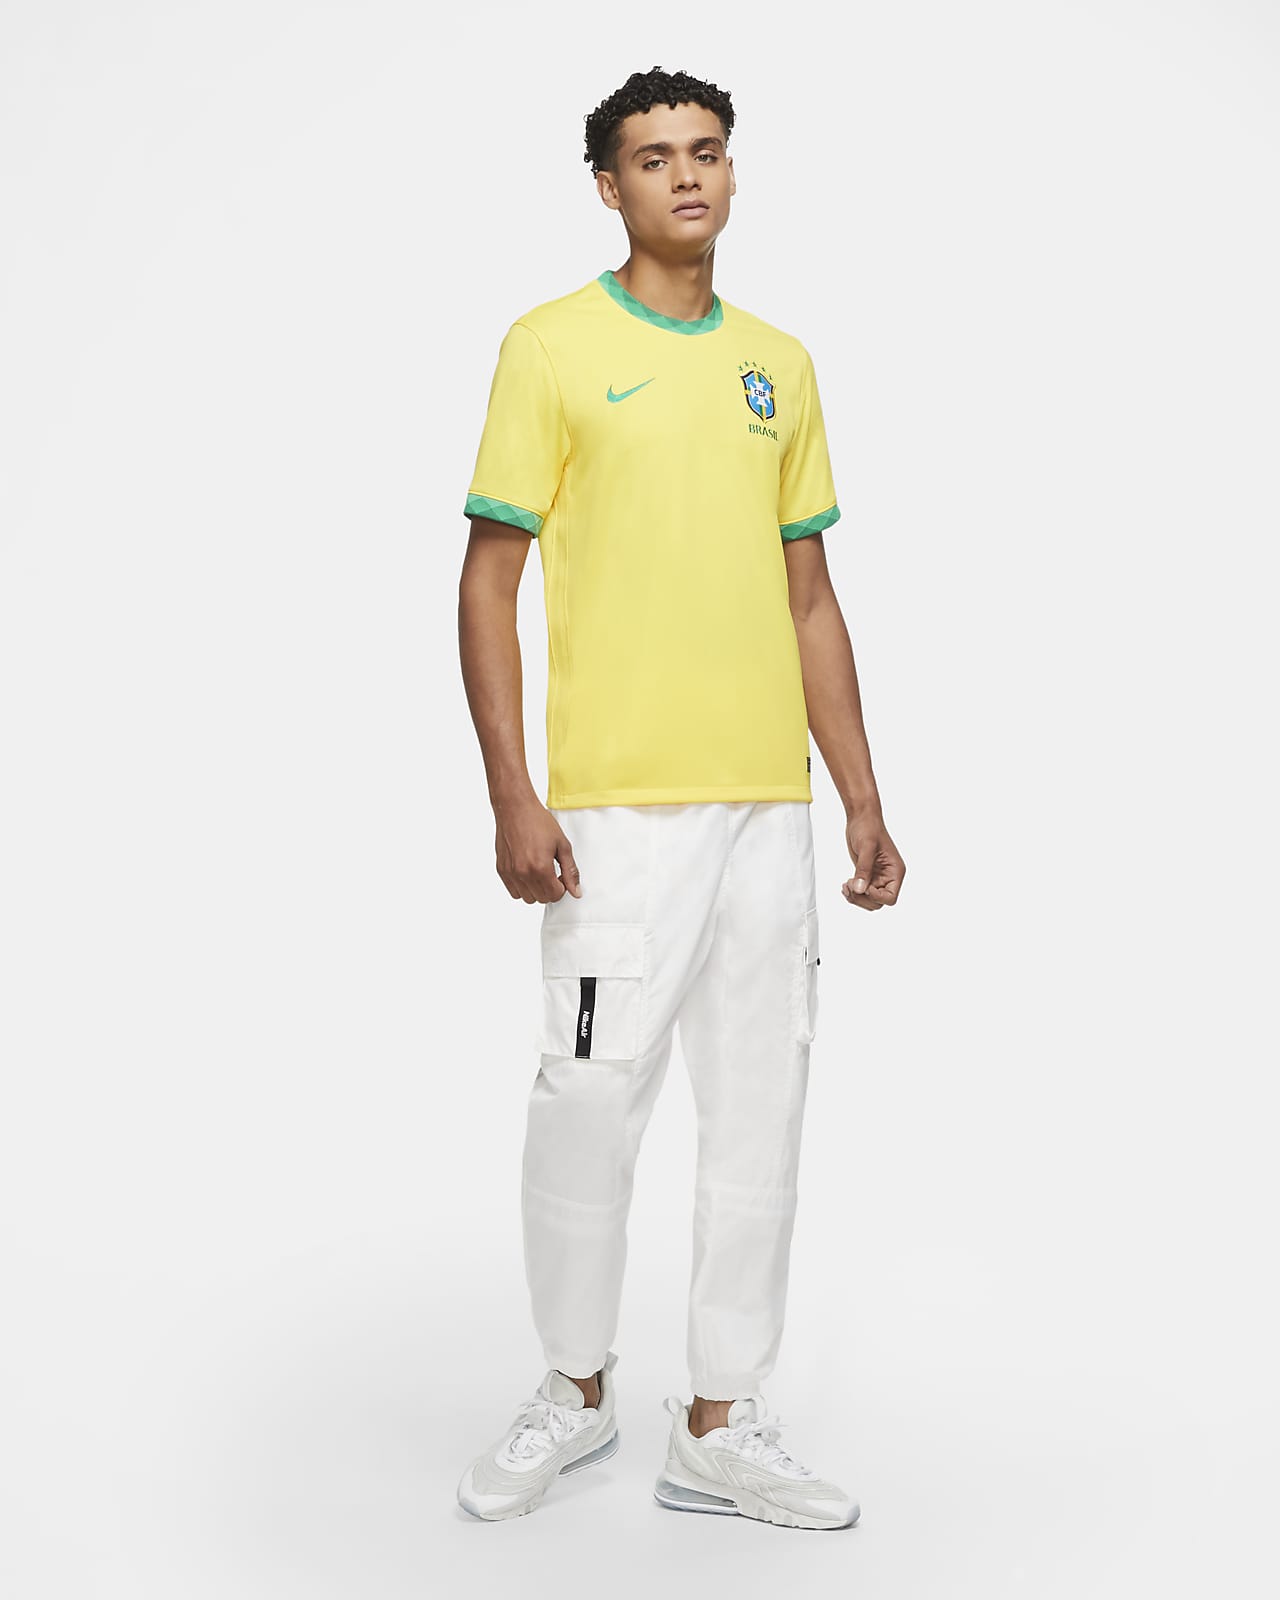 Official BNWT 2020 2021 Brazil Nike home football shirt Men's Medium